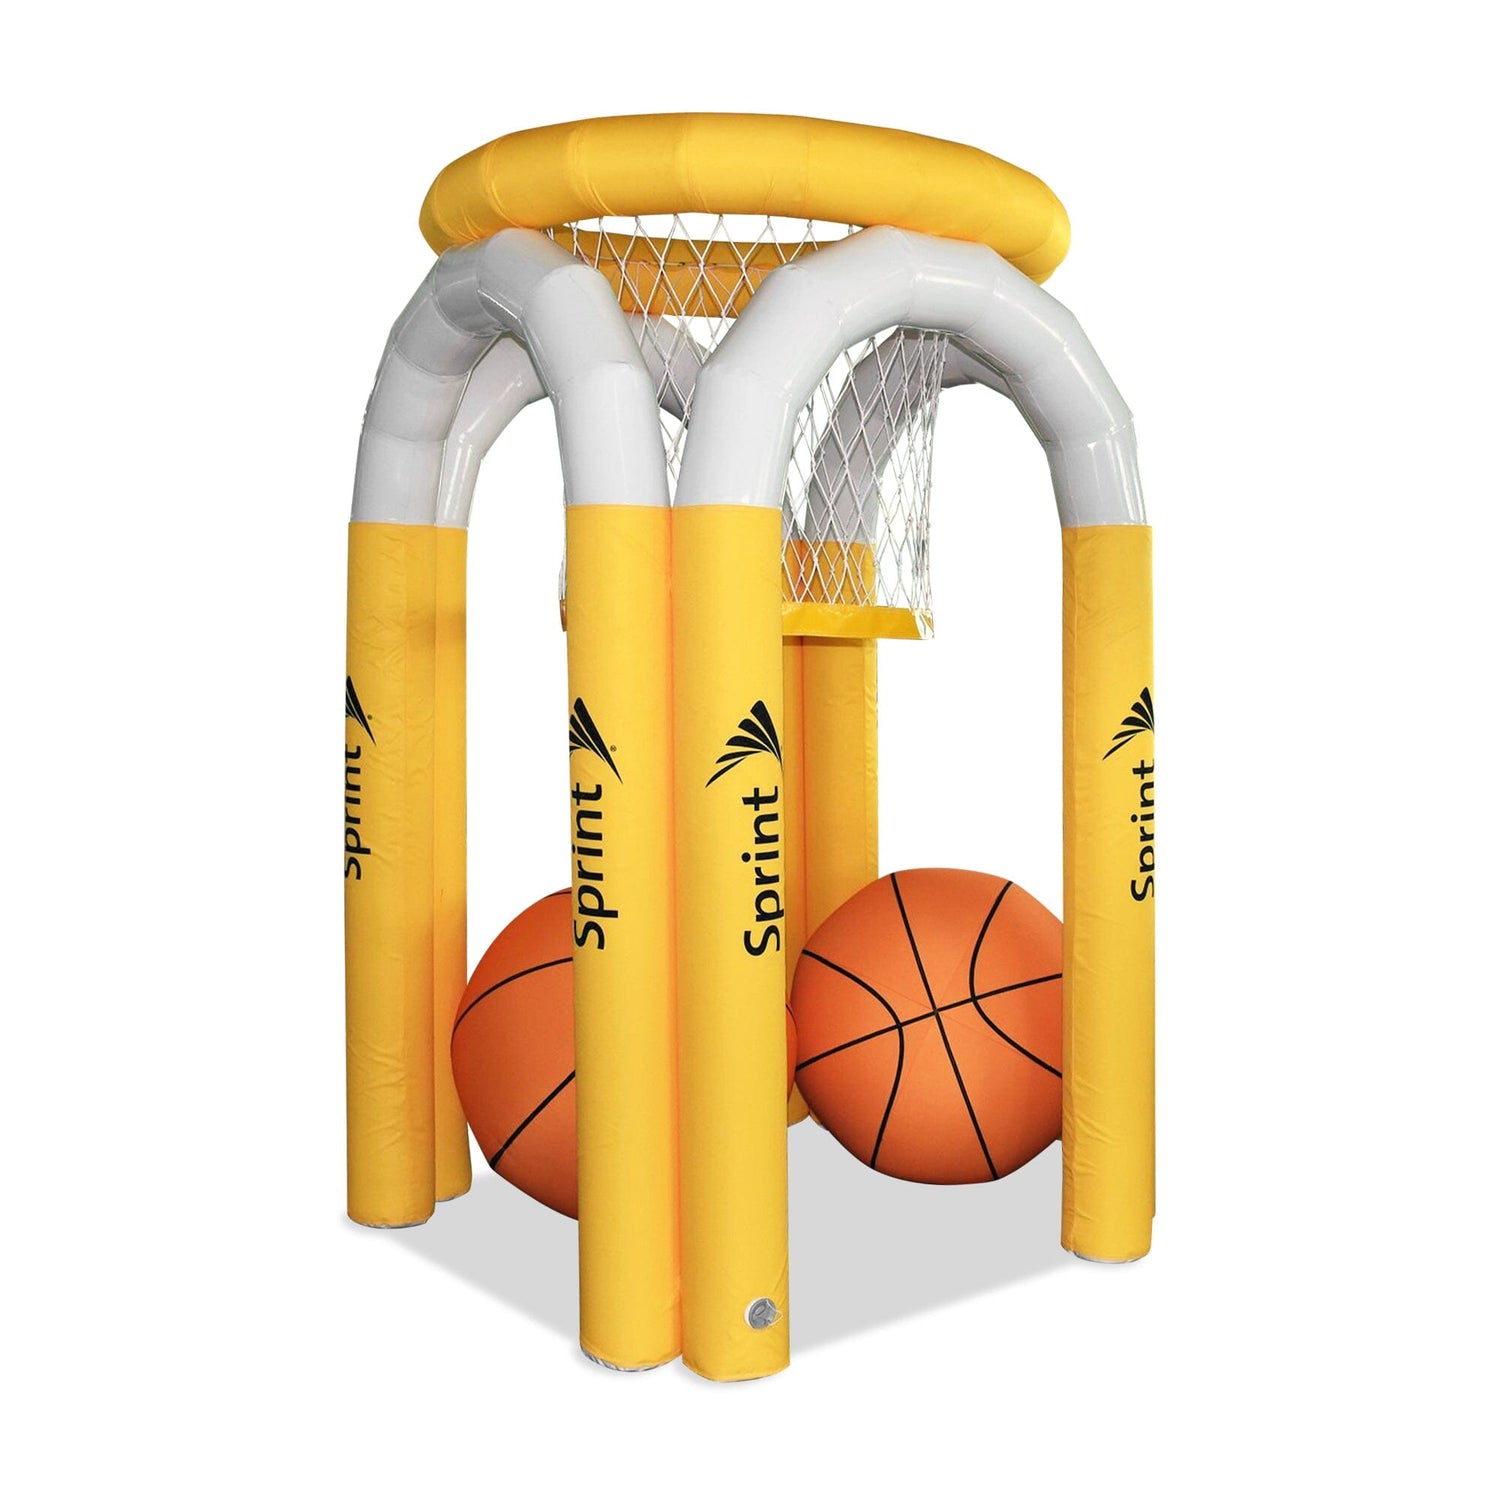 Giant Inflatable Basketball Game 